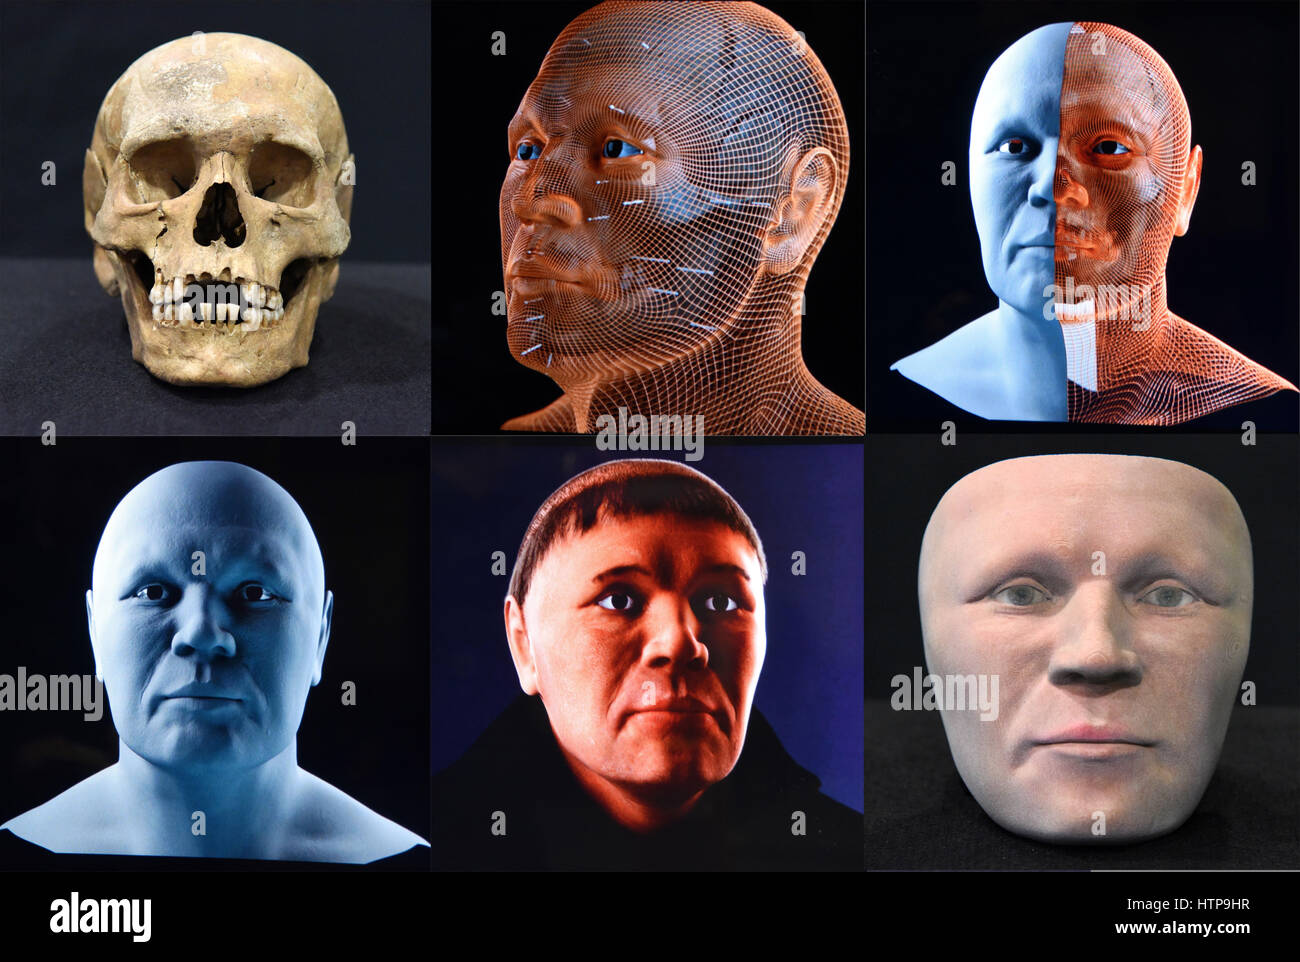 Lorsch, Deutschland. 16th Mar, 2017. Die Kombo zeigt die sechs Stationen einer 3 D Gesichtsrekonstruktion eines Mönchs, der um das Jahr 900 im Kloster Lorsch (Hessen) gelebt hat. Obere Reihe v.l.: Der Originalschädel, eine 3D-Berechnung des Gesichts und eine 3D-Brechnung des Gesichts mit Muskeln. Untere Reihe v.l.: Eine 3D-Darstellung des Kopfes noch ohne Haare, eine Computer-Darstellung des Kopfes und das mit einem 3D-Drucker erstellte Gesicht des Mönchs. (zu dpa «Kloster Lorsch zeigt rekonstruiertes Mönchs-Gesicht» vom 16.03.2017) Foto: Claus Völker/dpa /dpa/Alamy Live News Stock Photo